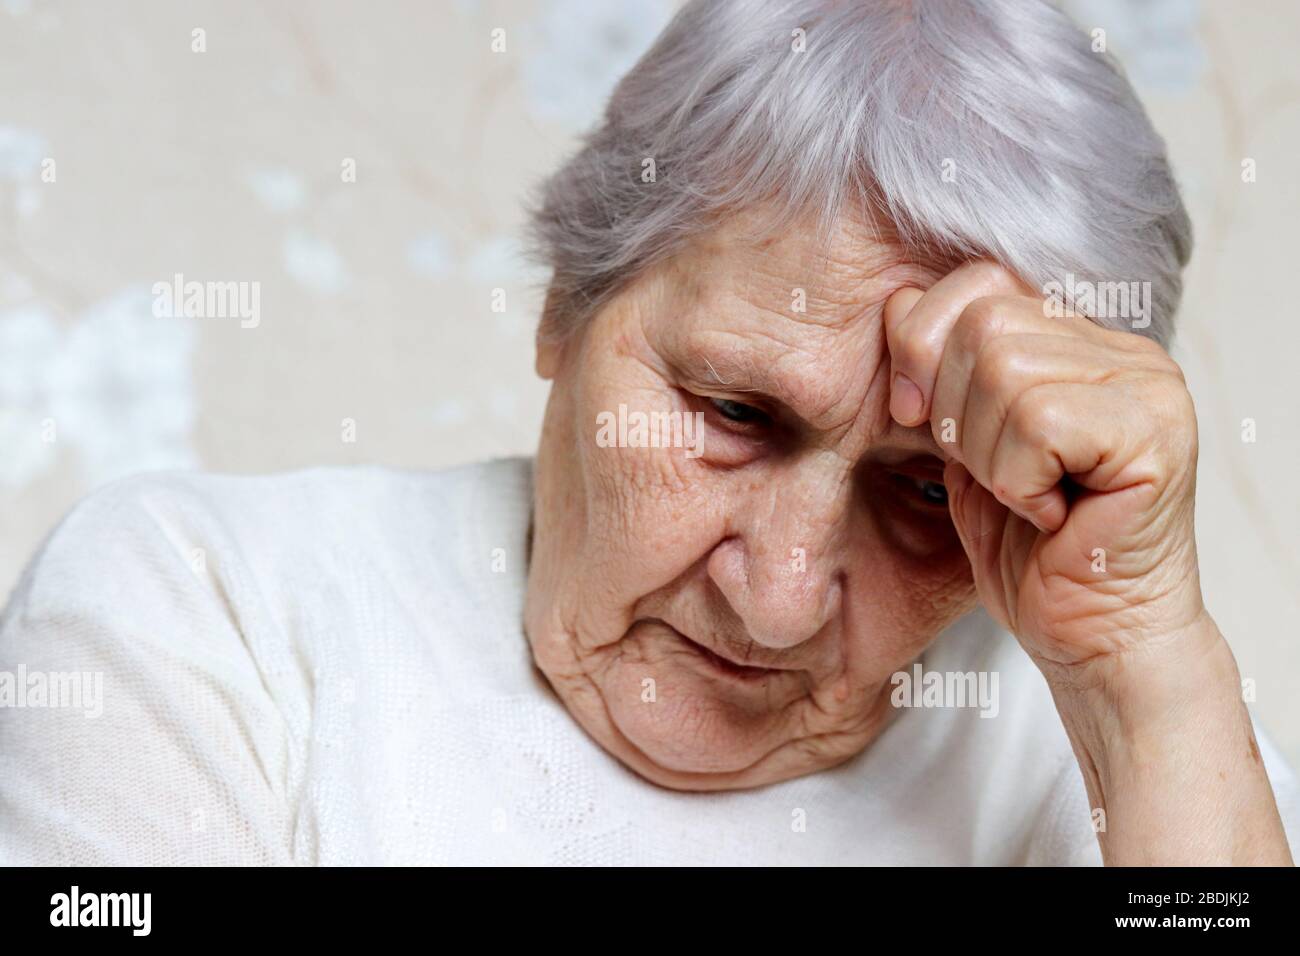 Donna anziana pensò a qualcosa. Donna triste con capelli grigi e pelle rugosa, concetto di mal di testa, ricordi, solitudine e vecchiaia Foto Stock